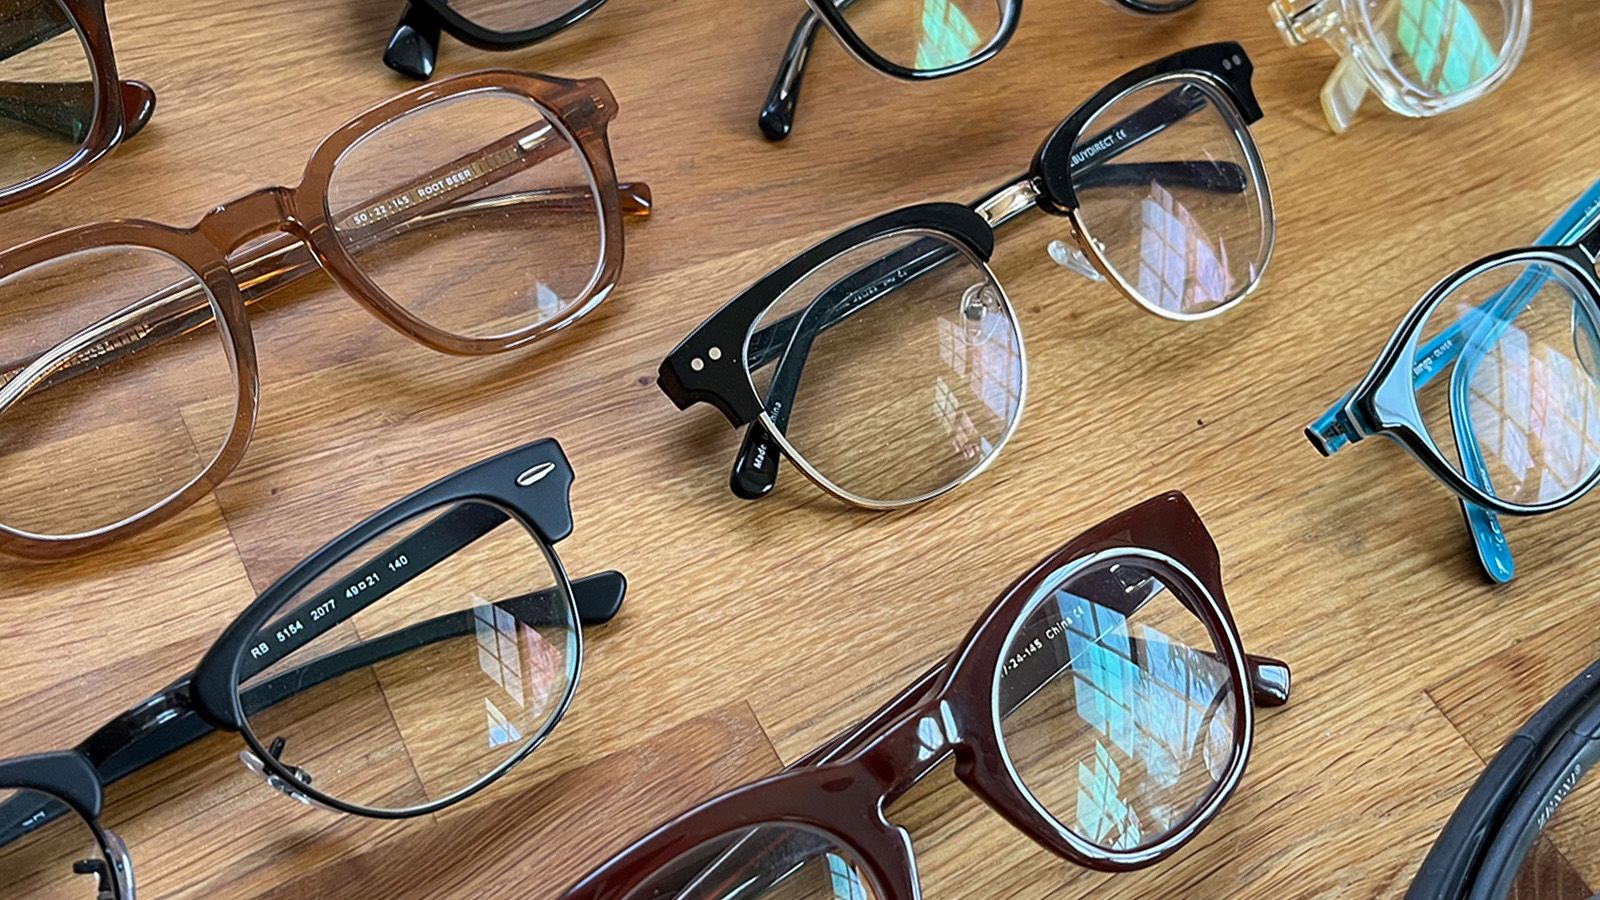 SMART Eyeglass Frame Holder with Clip-on